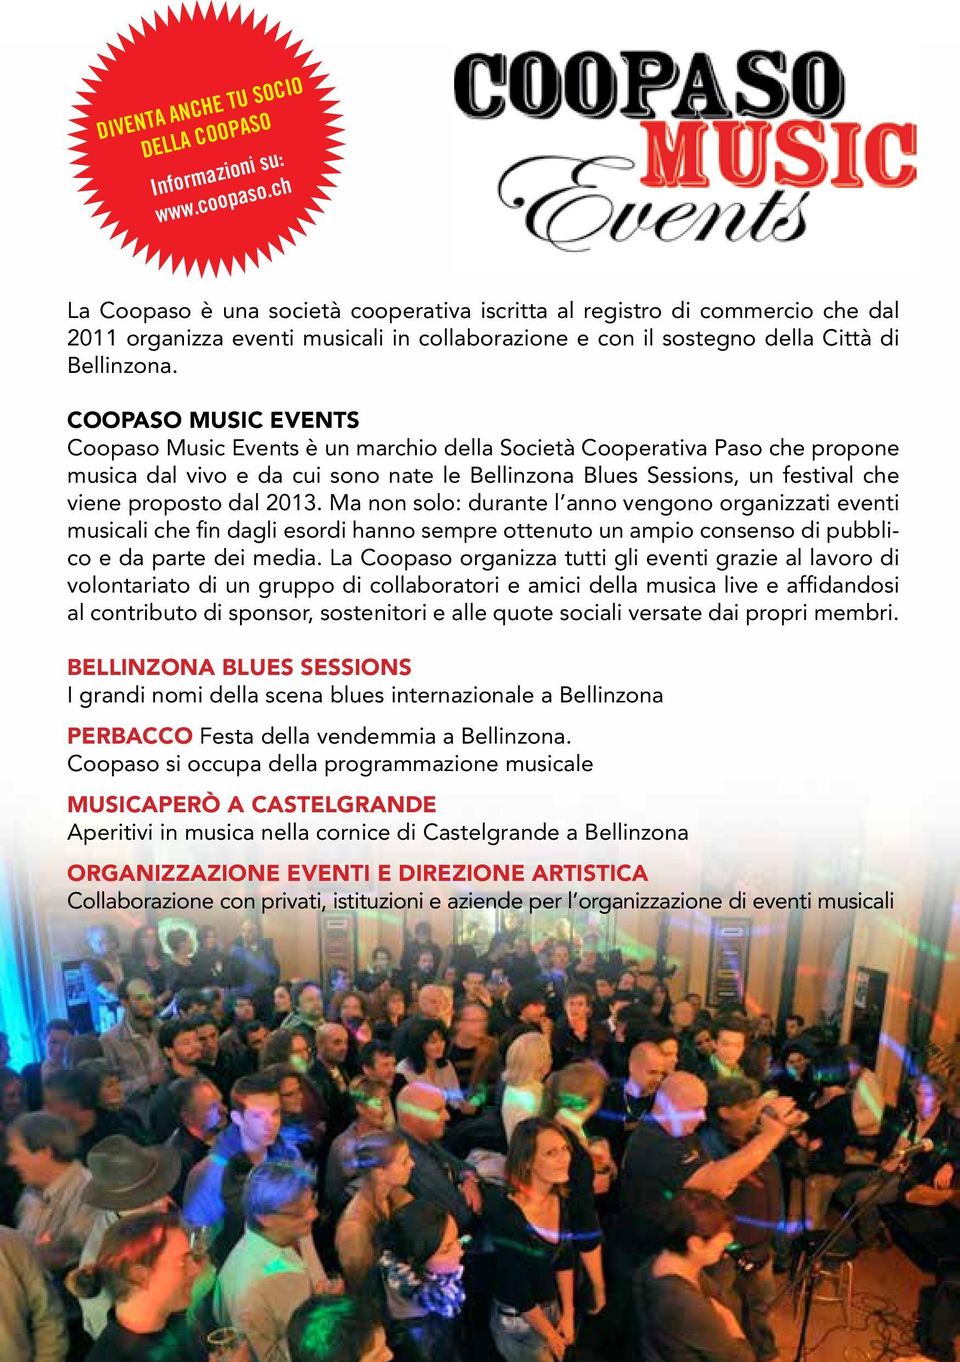 COOPASO MUSIC EVENTS Coopaso Music Events è un marchio della Società Cooperativa Paso che propone musica dal vivo e da cui sono nate le Bellinzona Blues Sessions, un festival che viene proposto dal